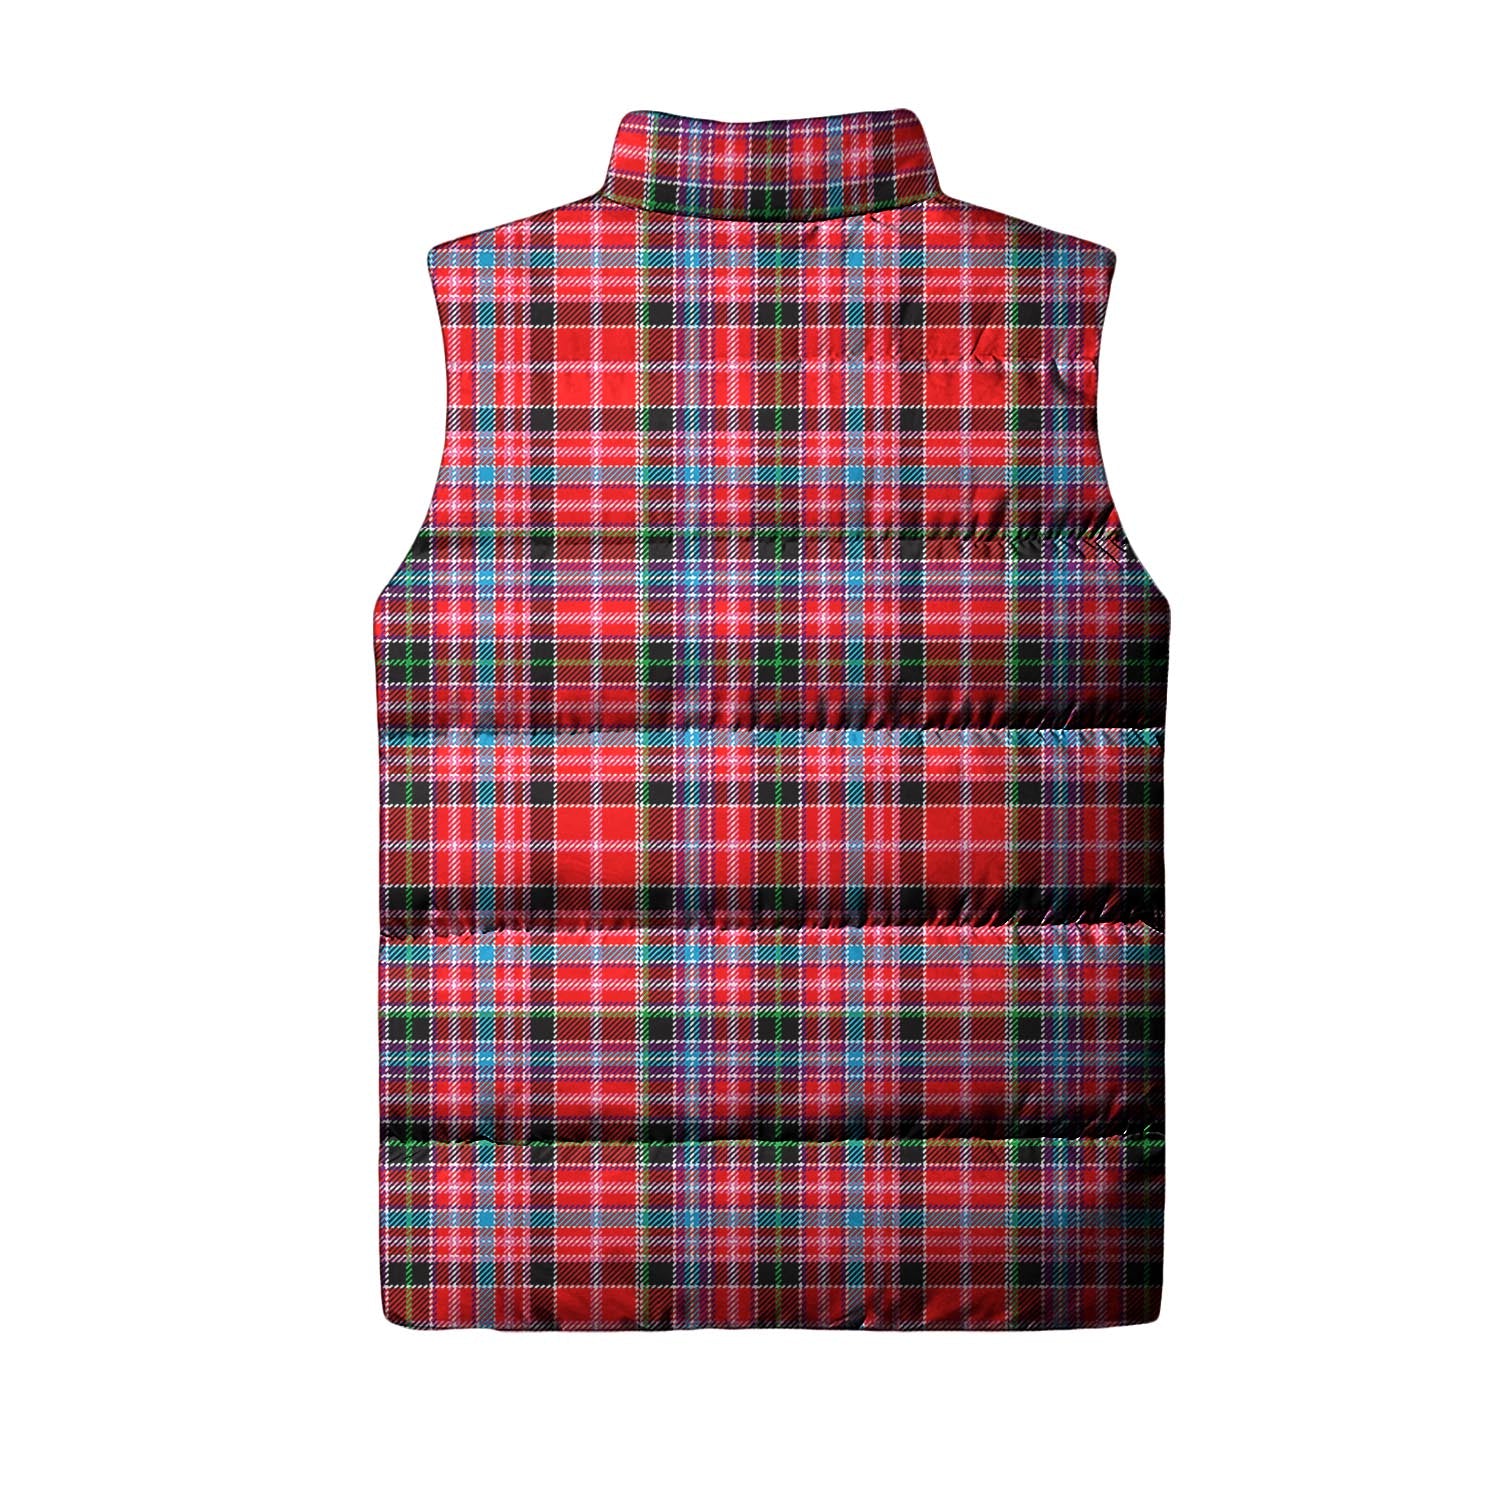 Aberdeen District Tartan Sleeveless Puffer Jacket - Tartanvibesclothing